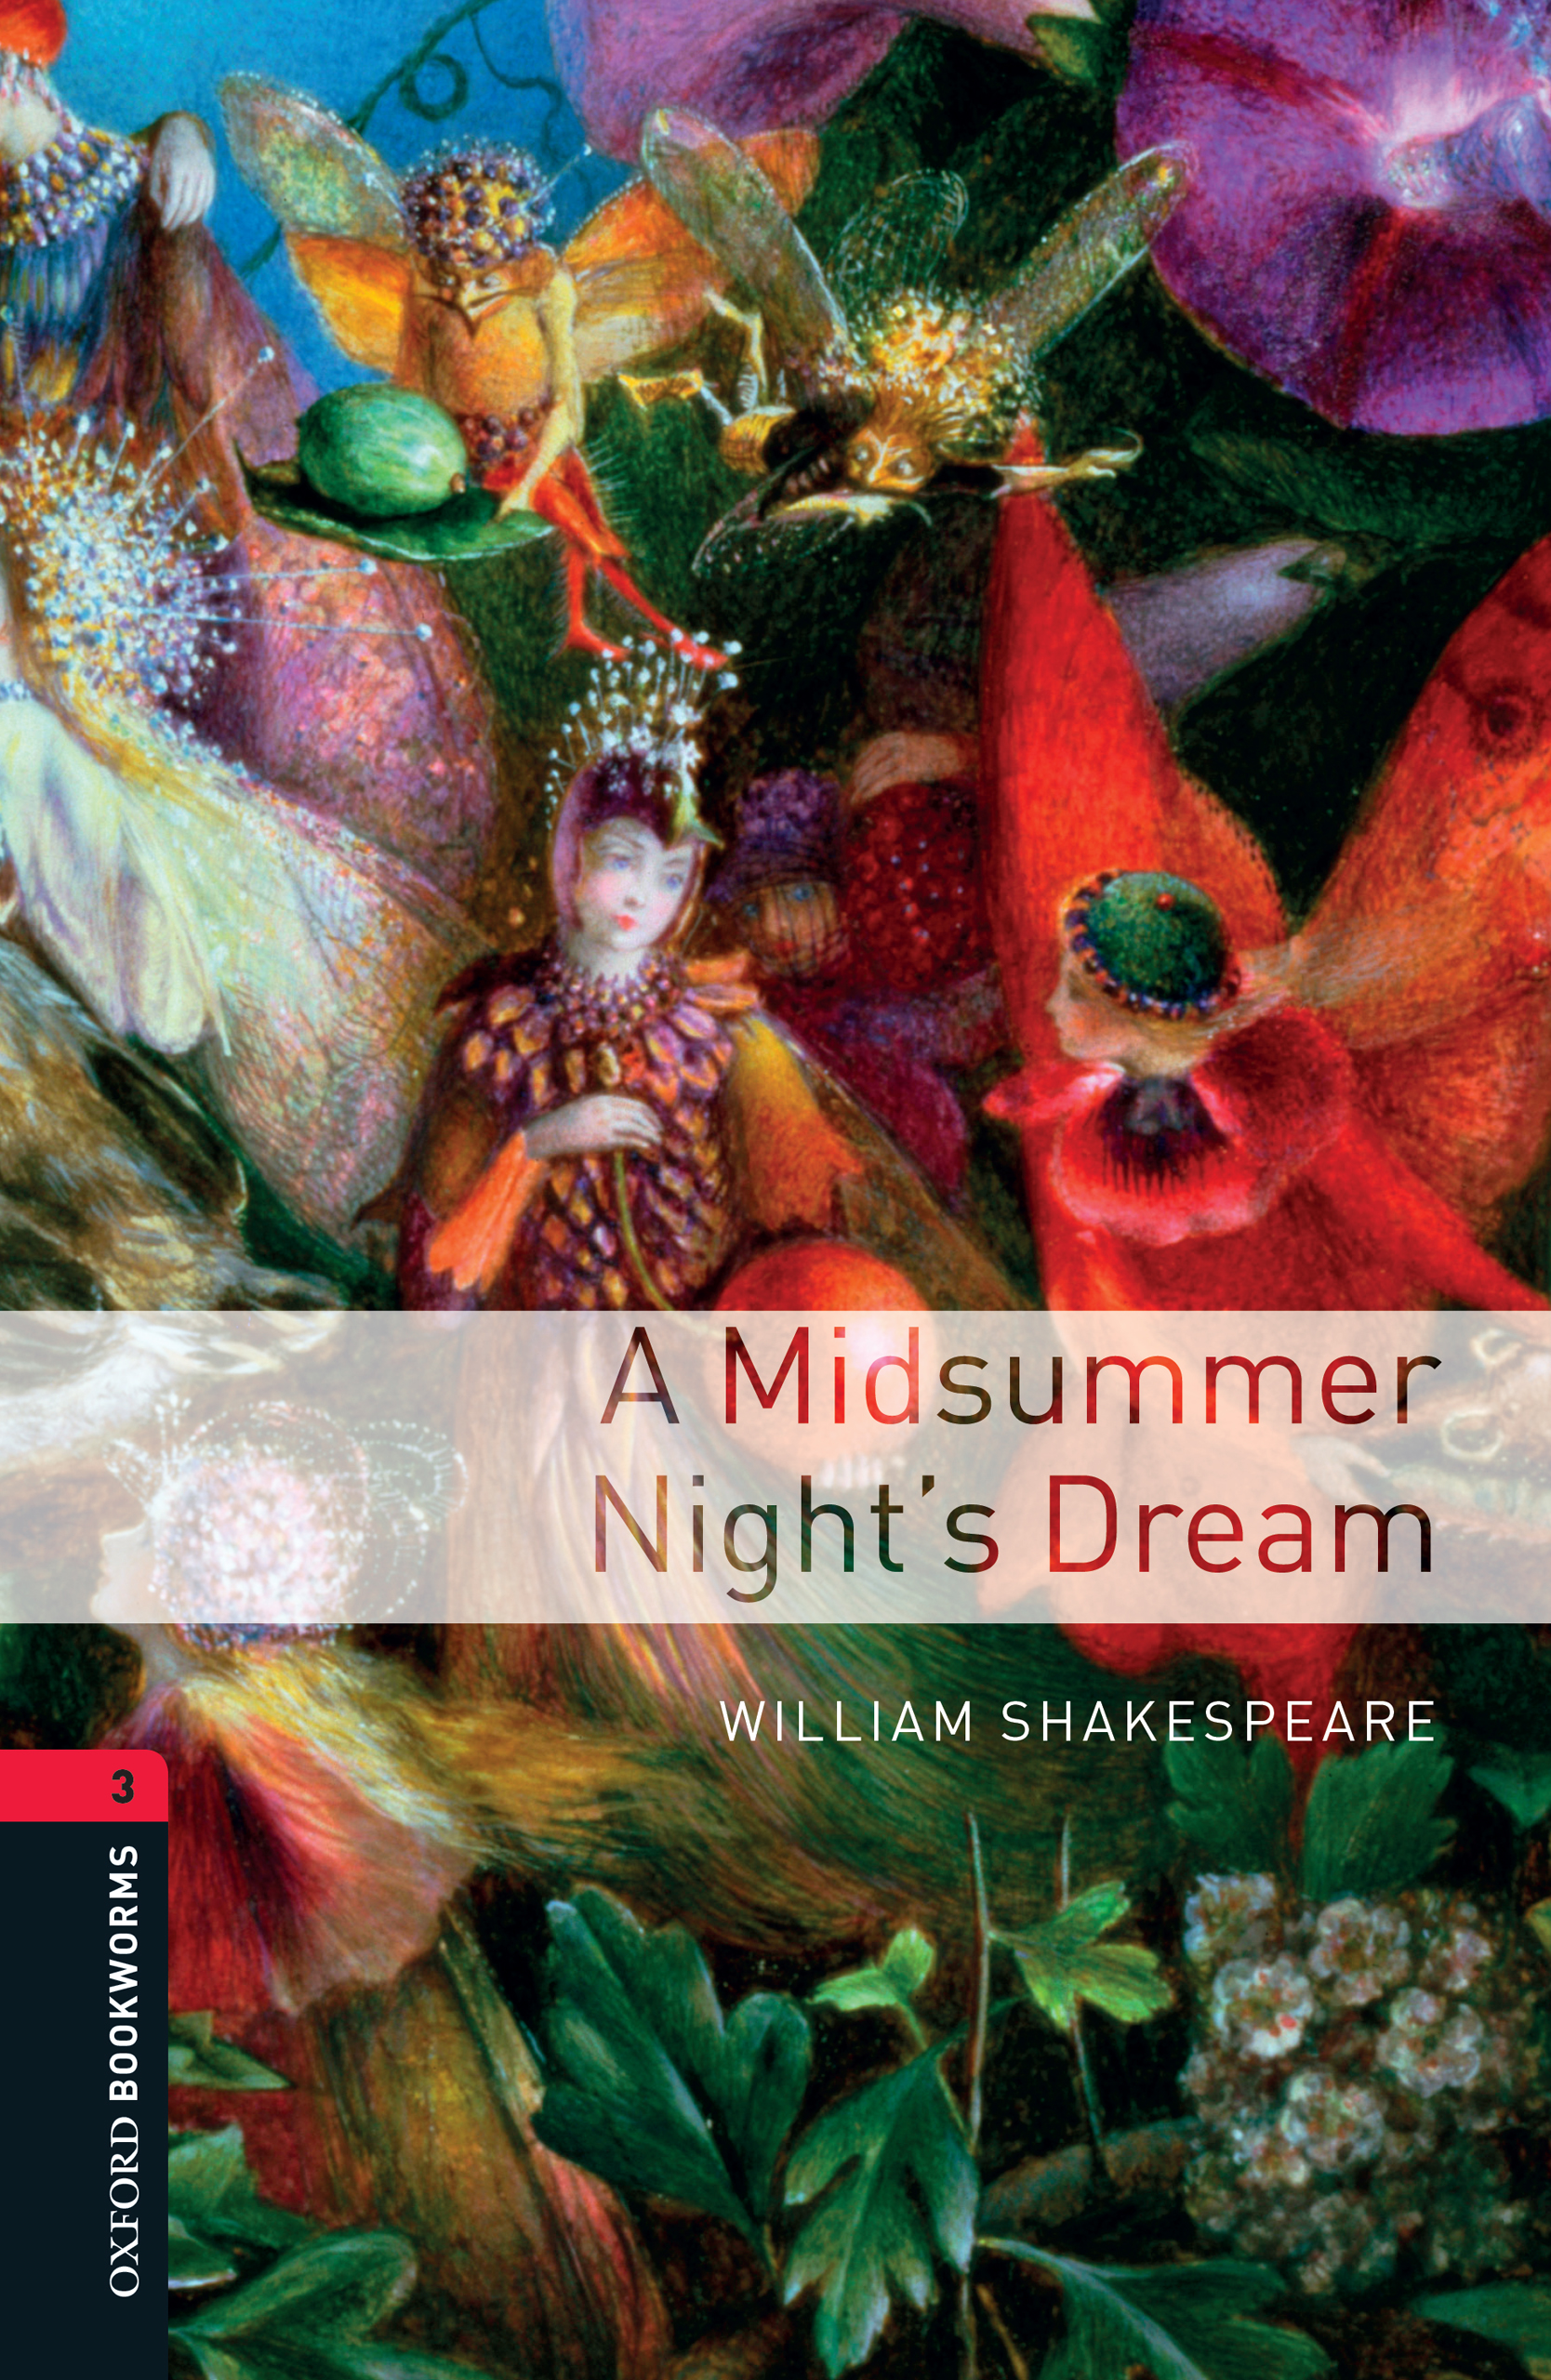 Книга A Midsummer Night's Dream из серии , созданная William Shakespeare, может относится к жанру Иностранные языки, Иностранные языки, Зарубежная образовательная литература. Стоимость электронной книги A Midsummer Night's Dream с идентификатором 23572957 составляет 405.87 руб.